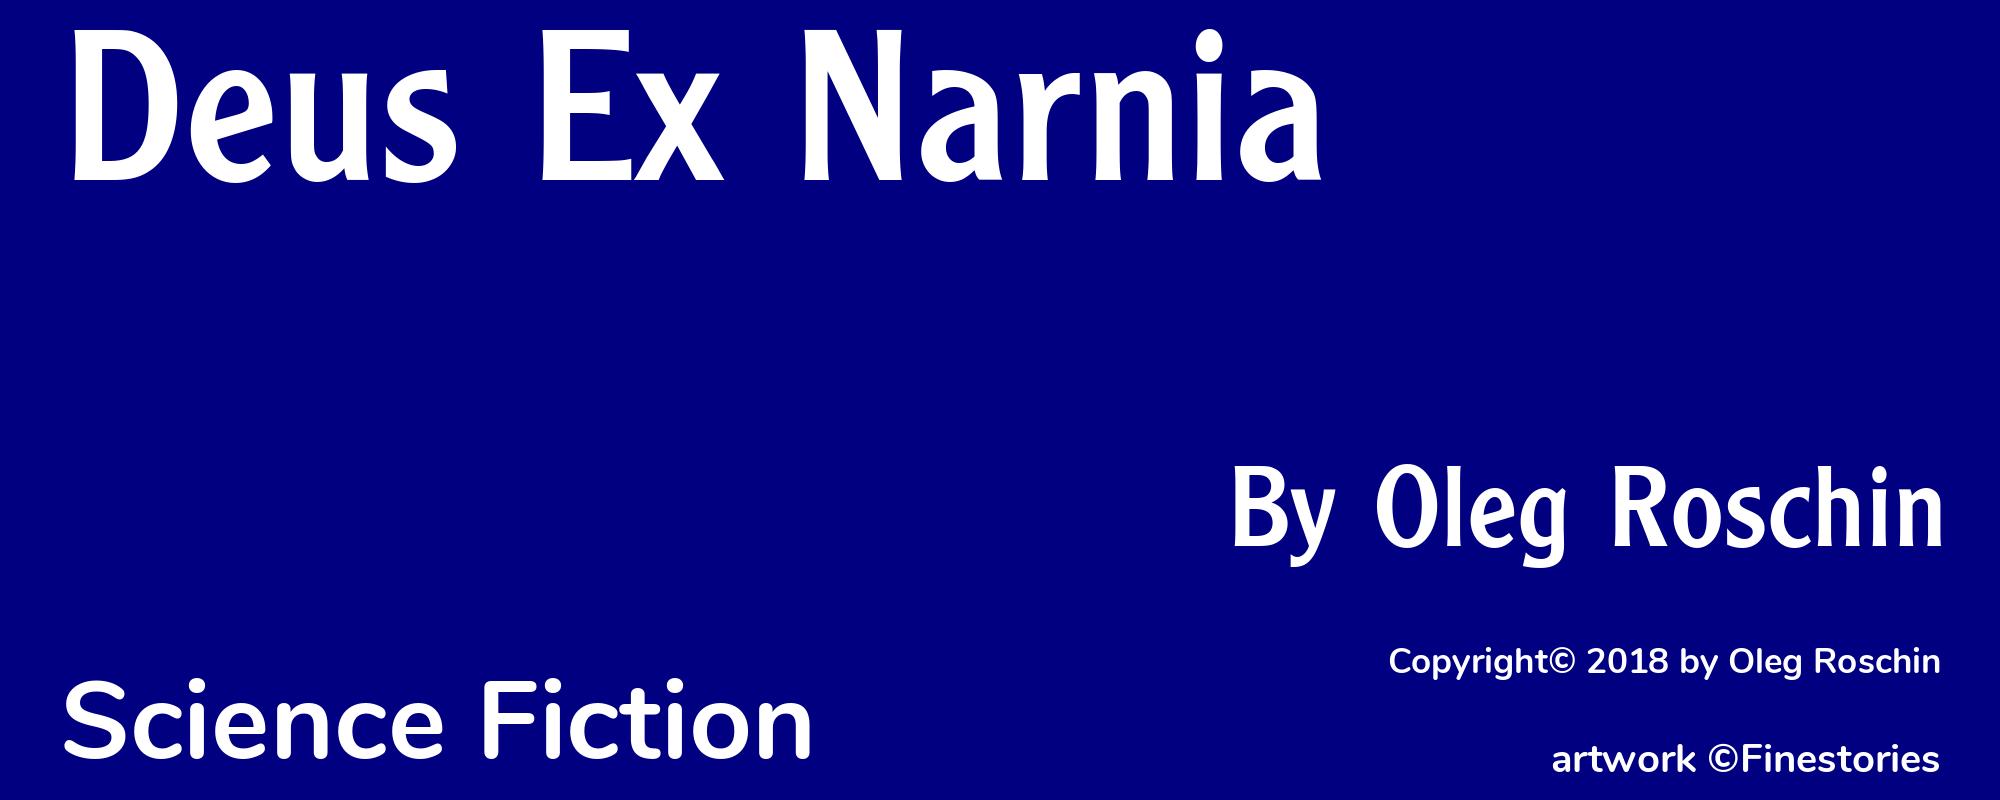 Deus Ex Narnia - Cover